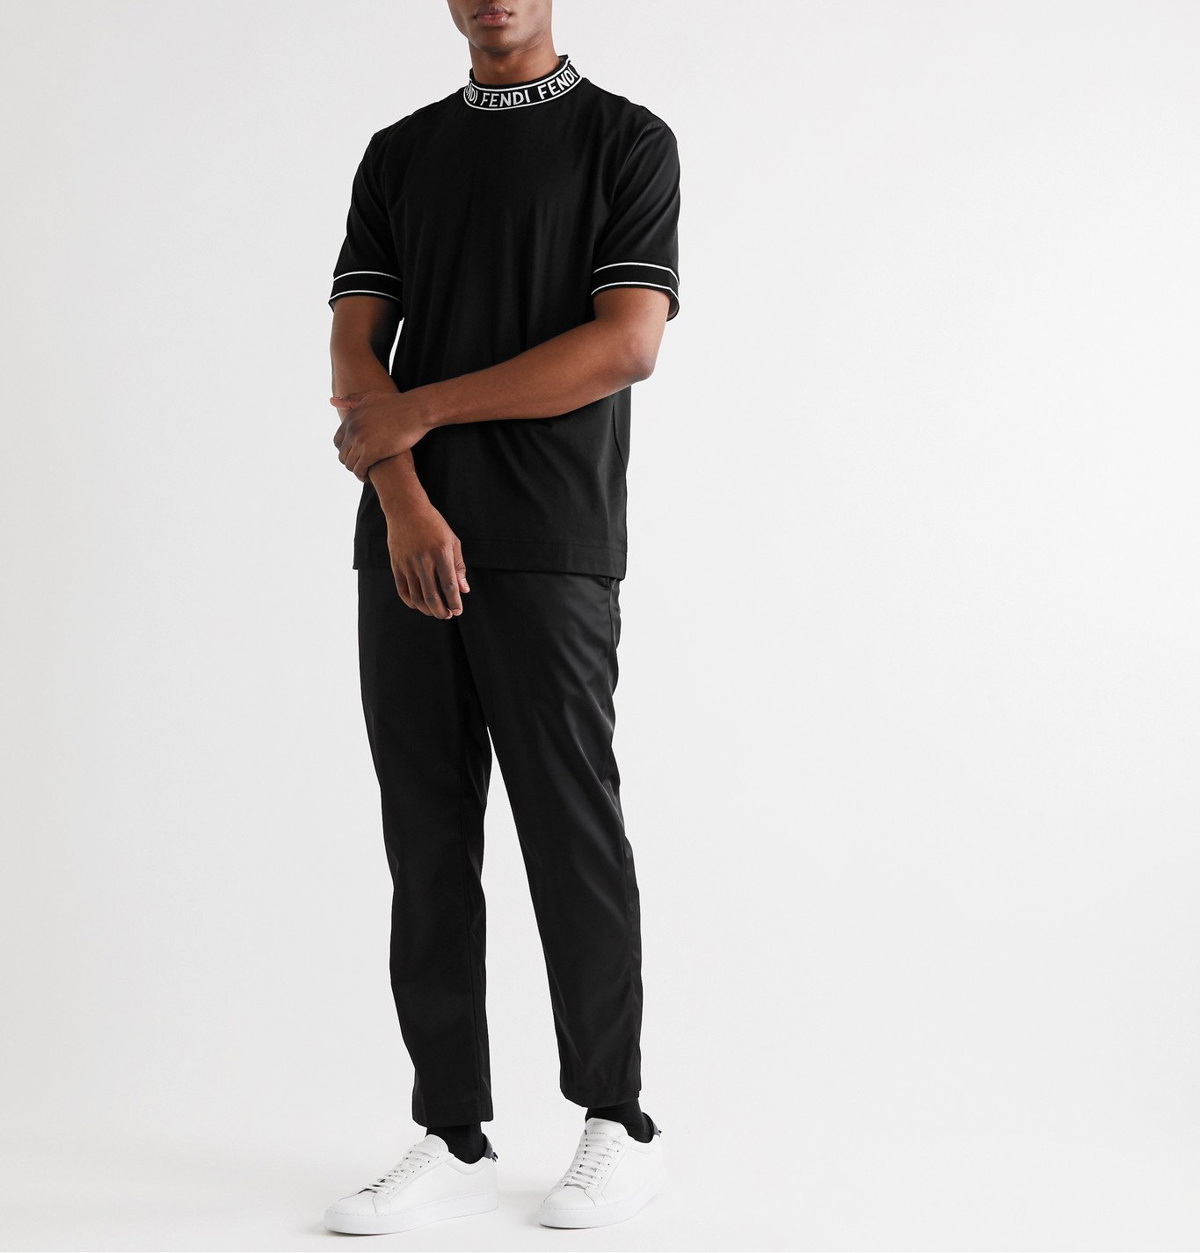 Fendi - Logo-Jacquard Cotton-Jersey Mock-Neck T-Shirt - Black Fendi